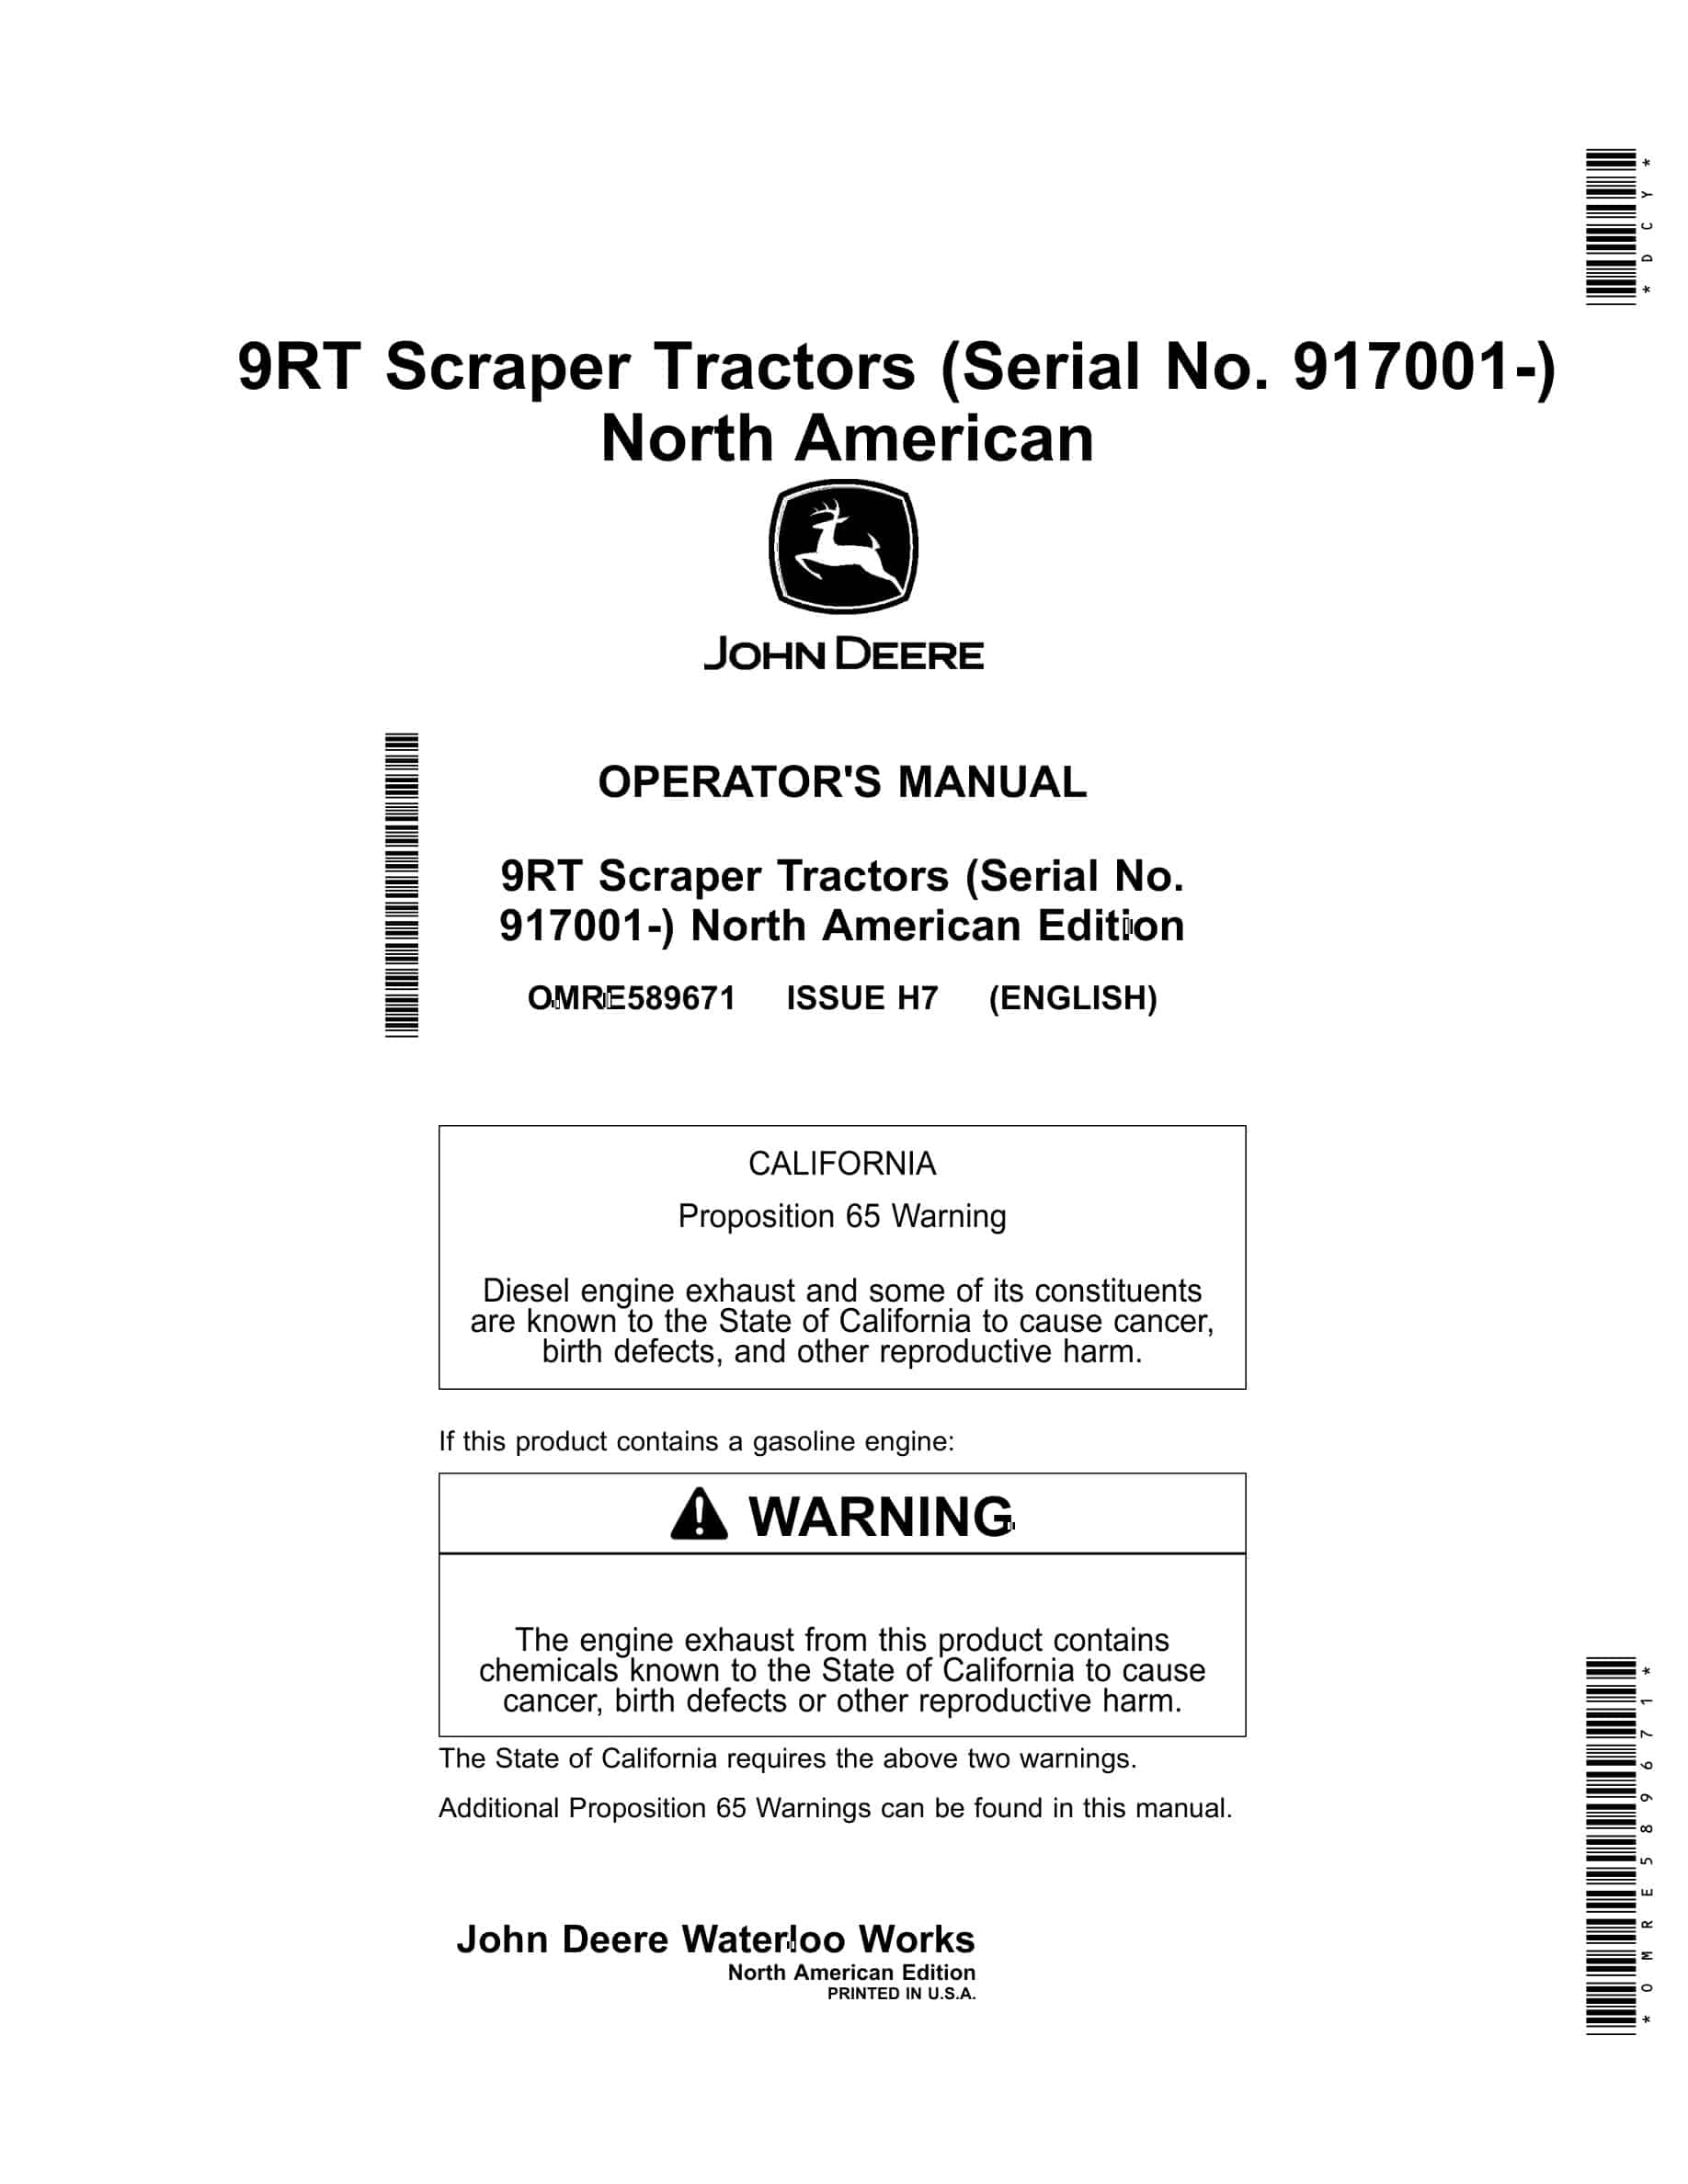 John Deere 9RT Tractor Operator Manual OMRE589671-1